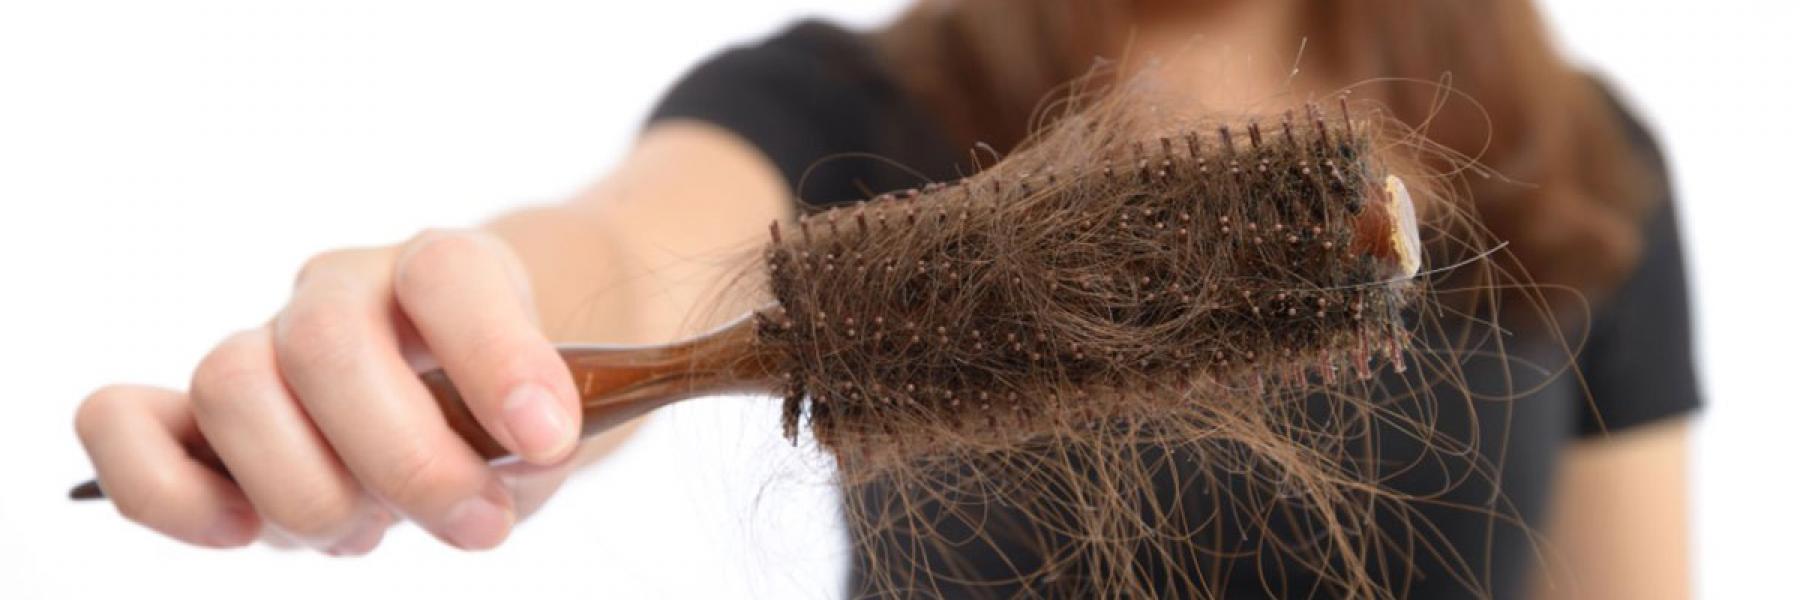 14 سبباً لتساقط الشعر المفاجئ